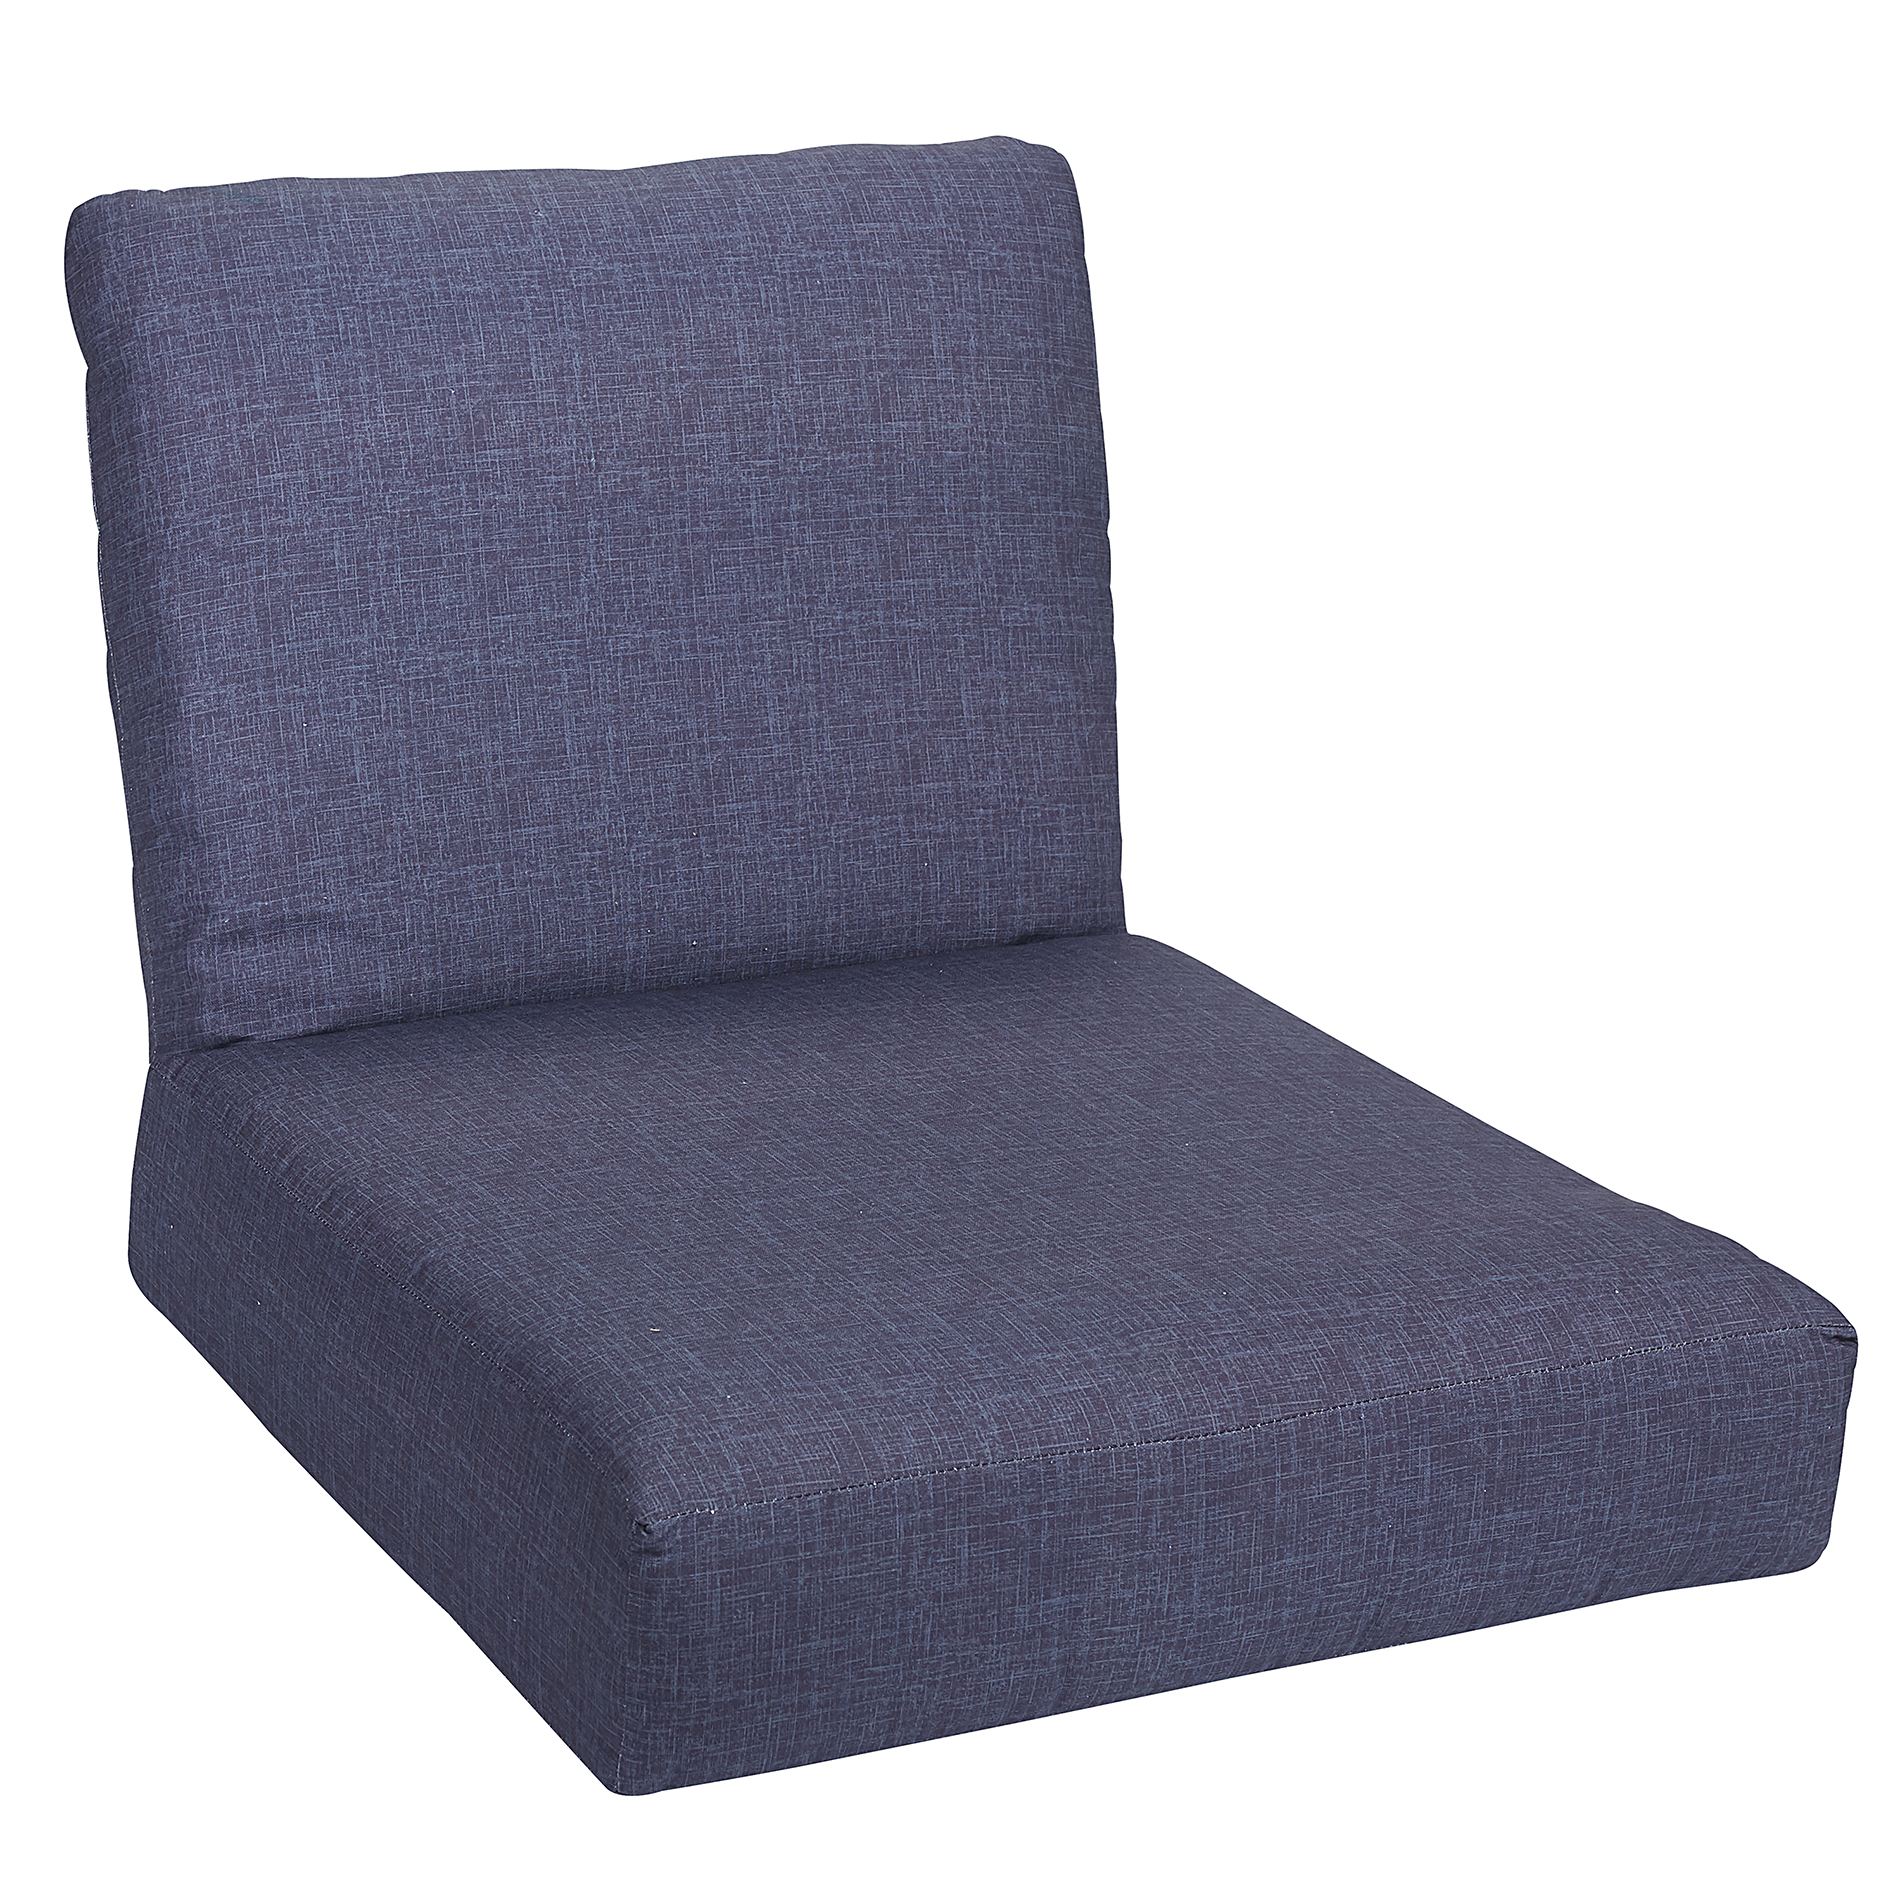 Sutton Rowe Deep Seat Outdoor Chair Cushion - Blue